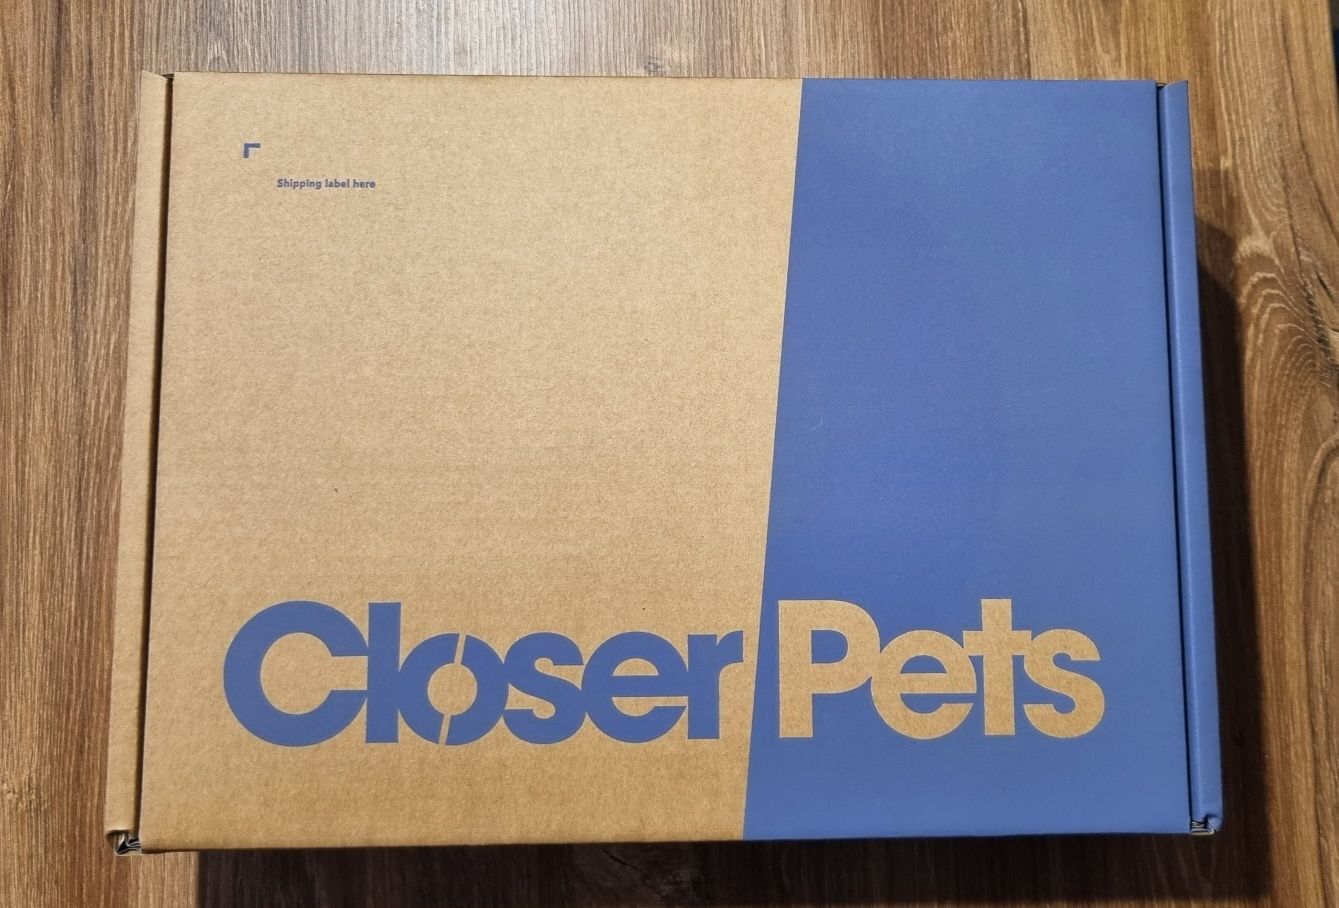 Closer Pets poidełko-fontanna dla psa lub kota